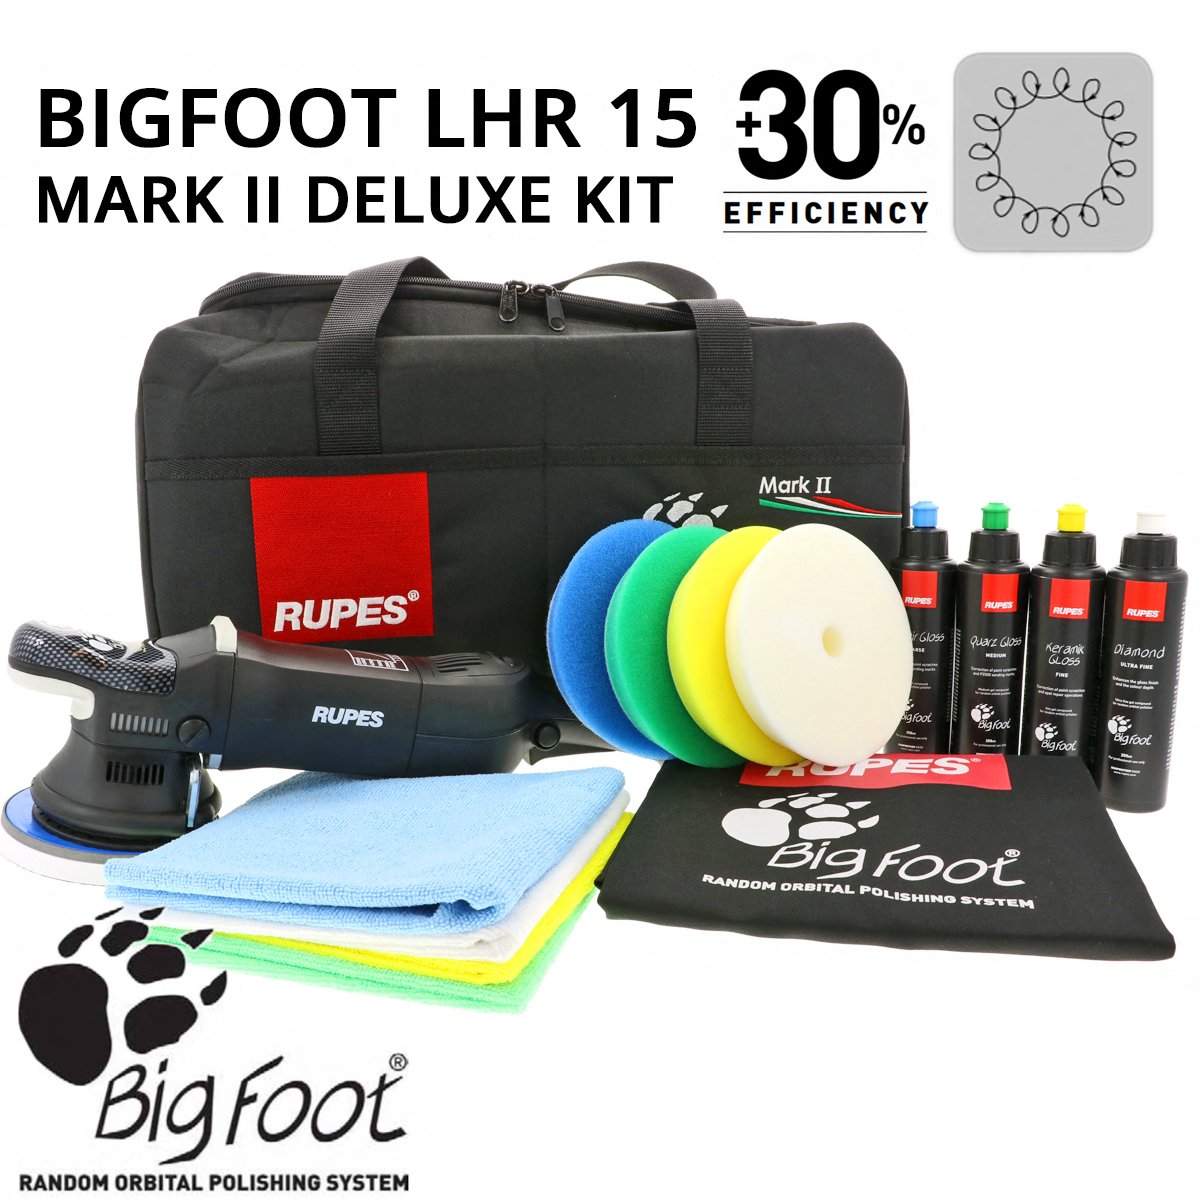 BigFoot LHR15 MarkII Deluxe Kit